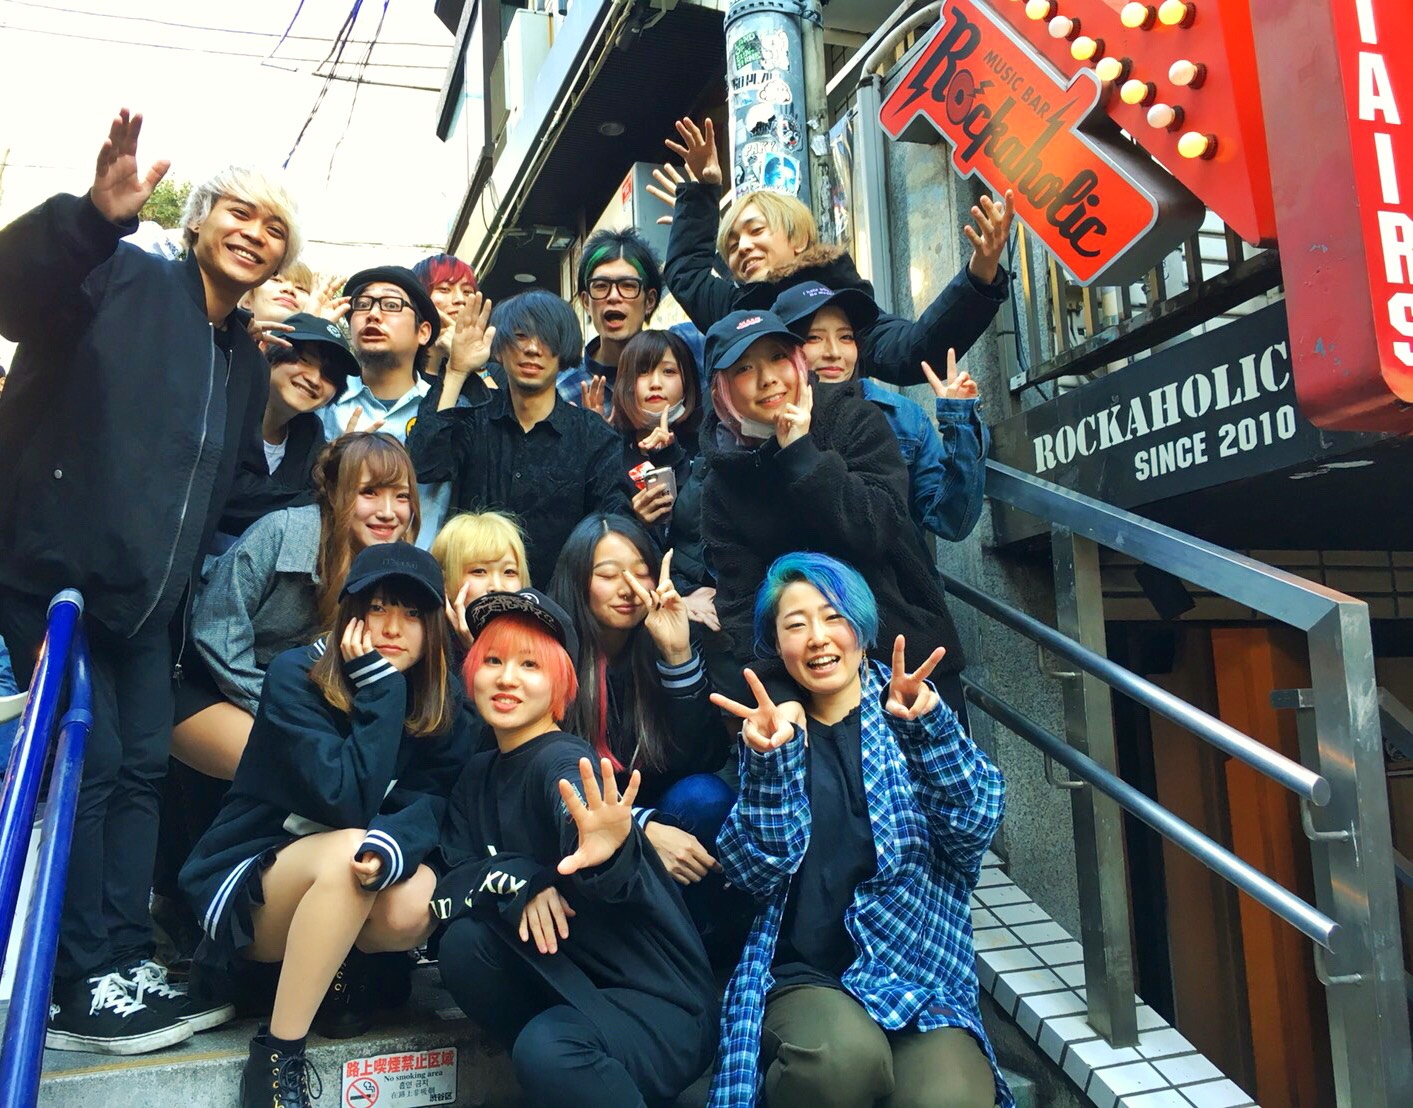 https://bar-rockaholic.jp/shibuya/blog/S__8904710.jpg